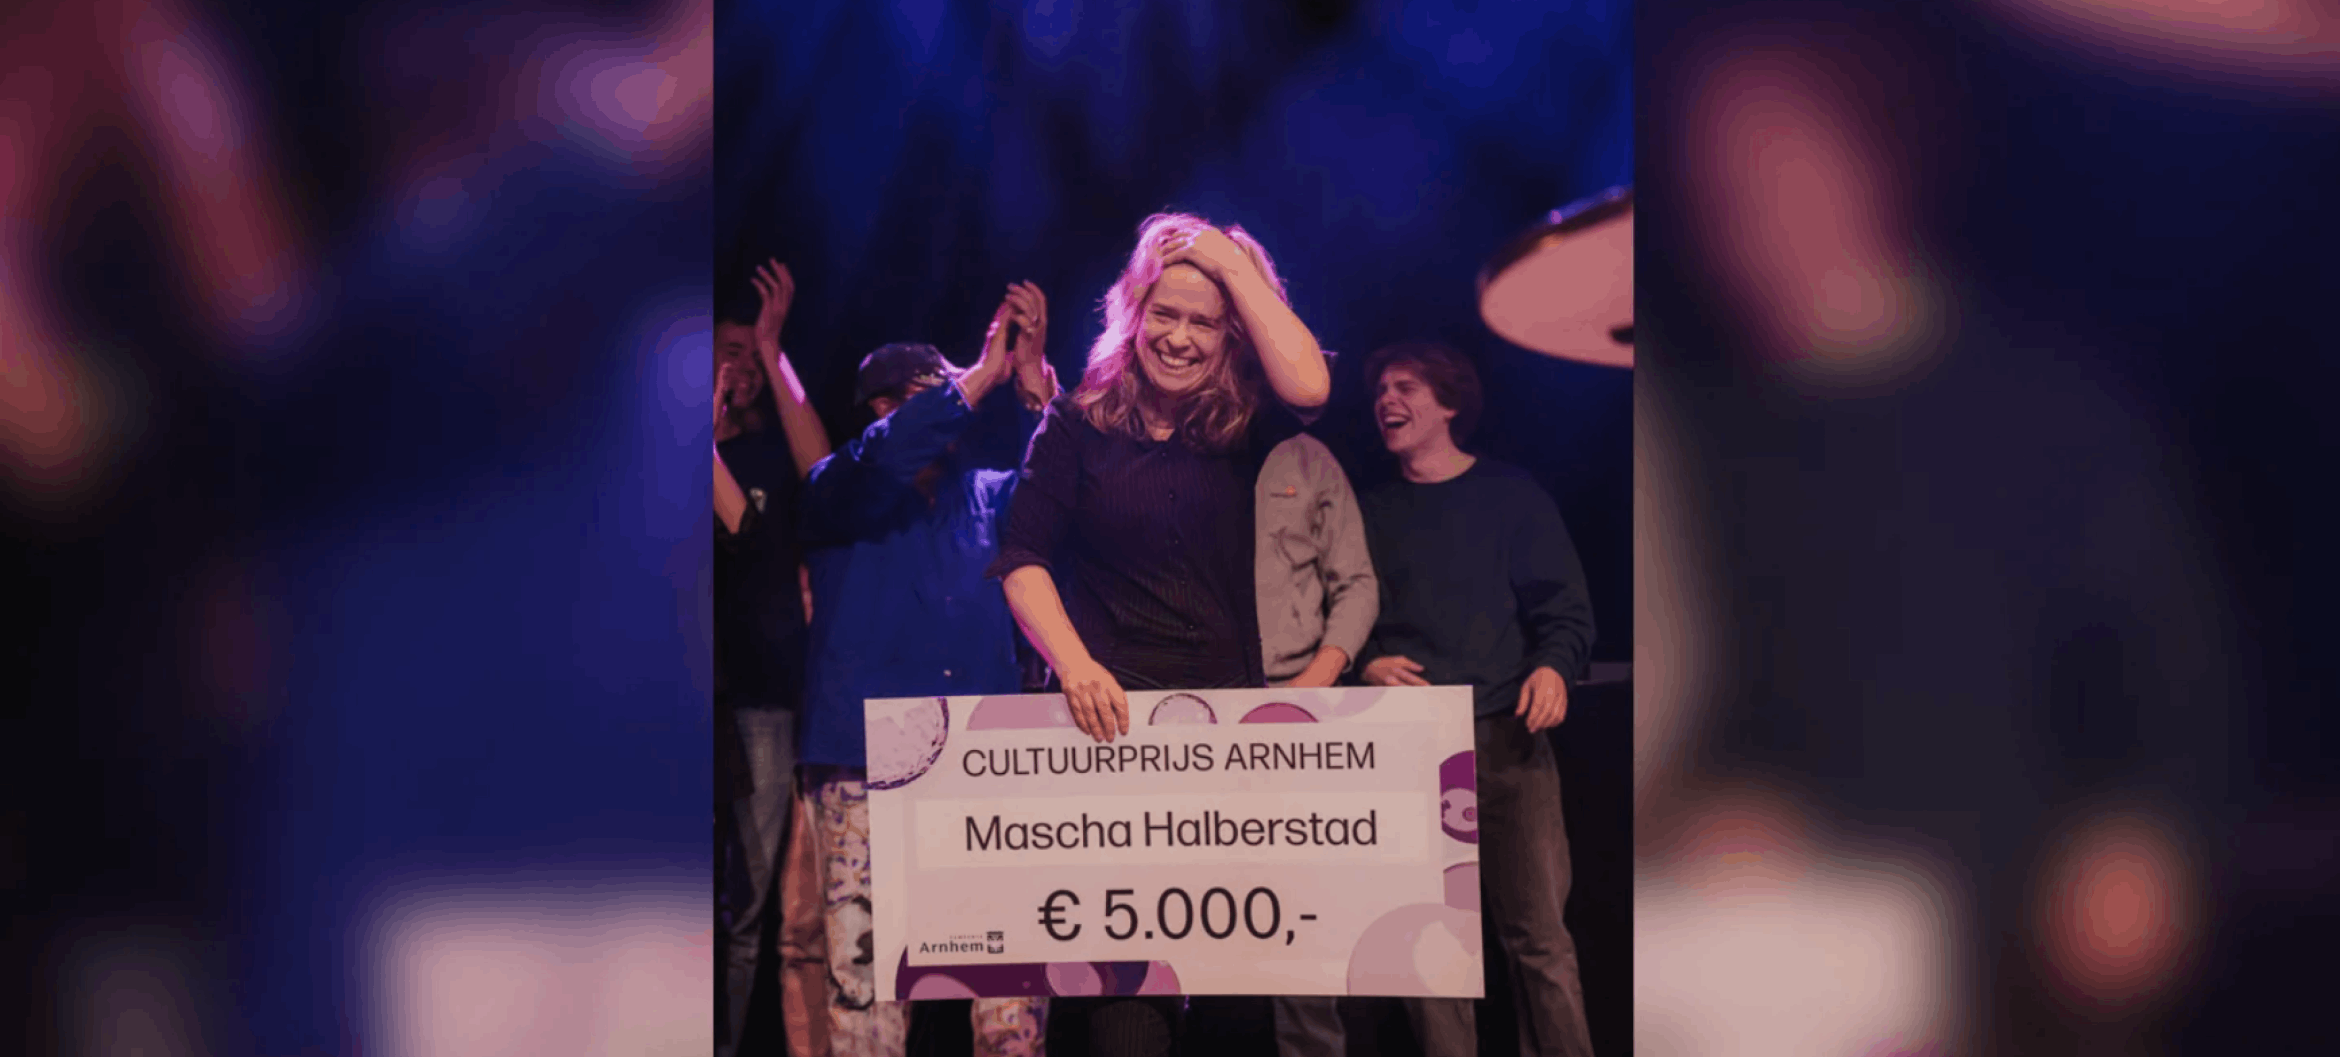 Mascha Halberstad winnaar Cultuurprijs Arnhem